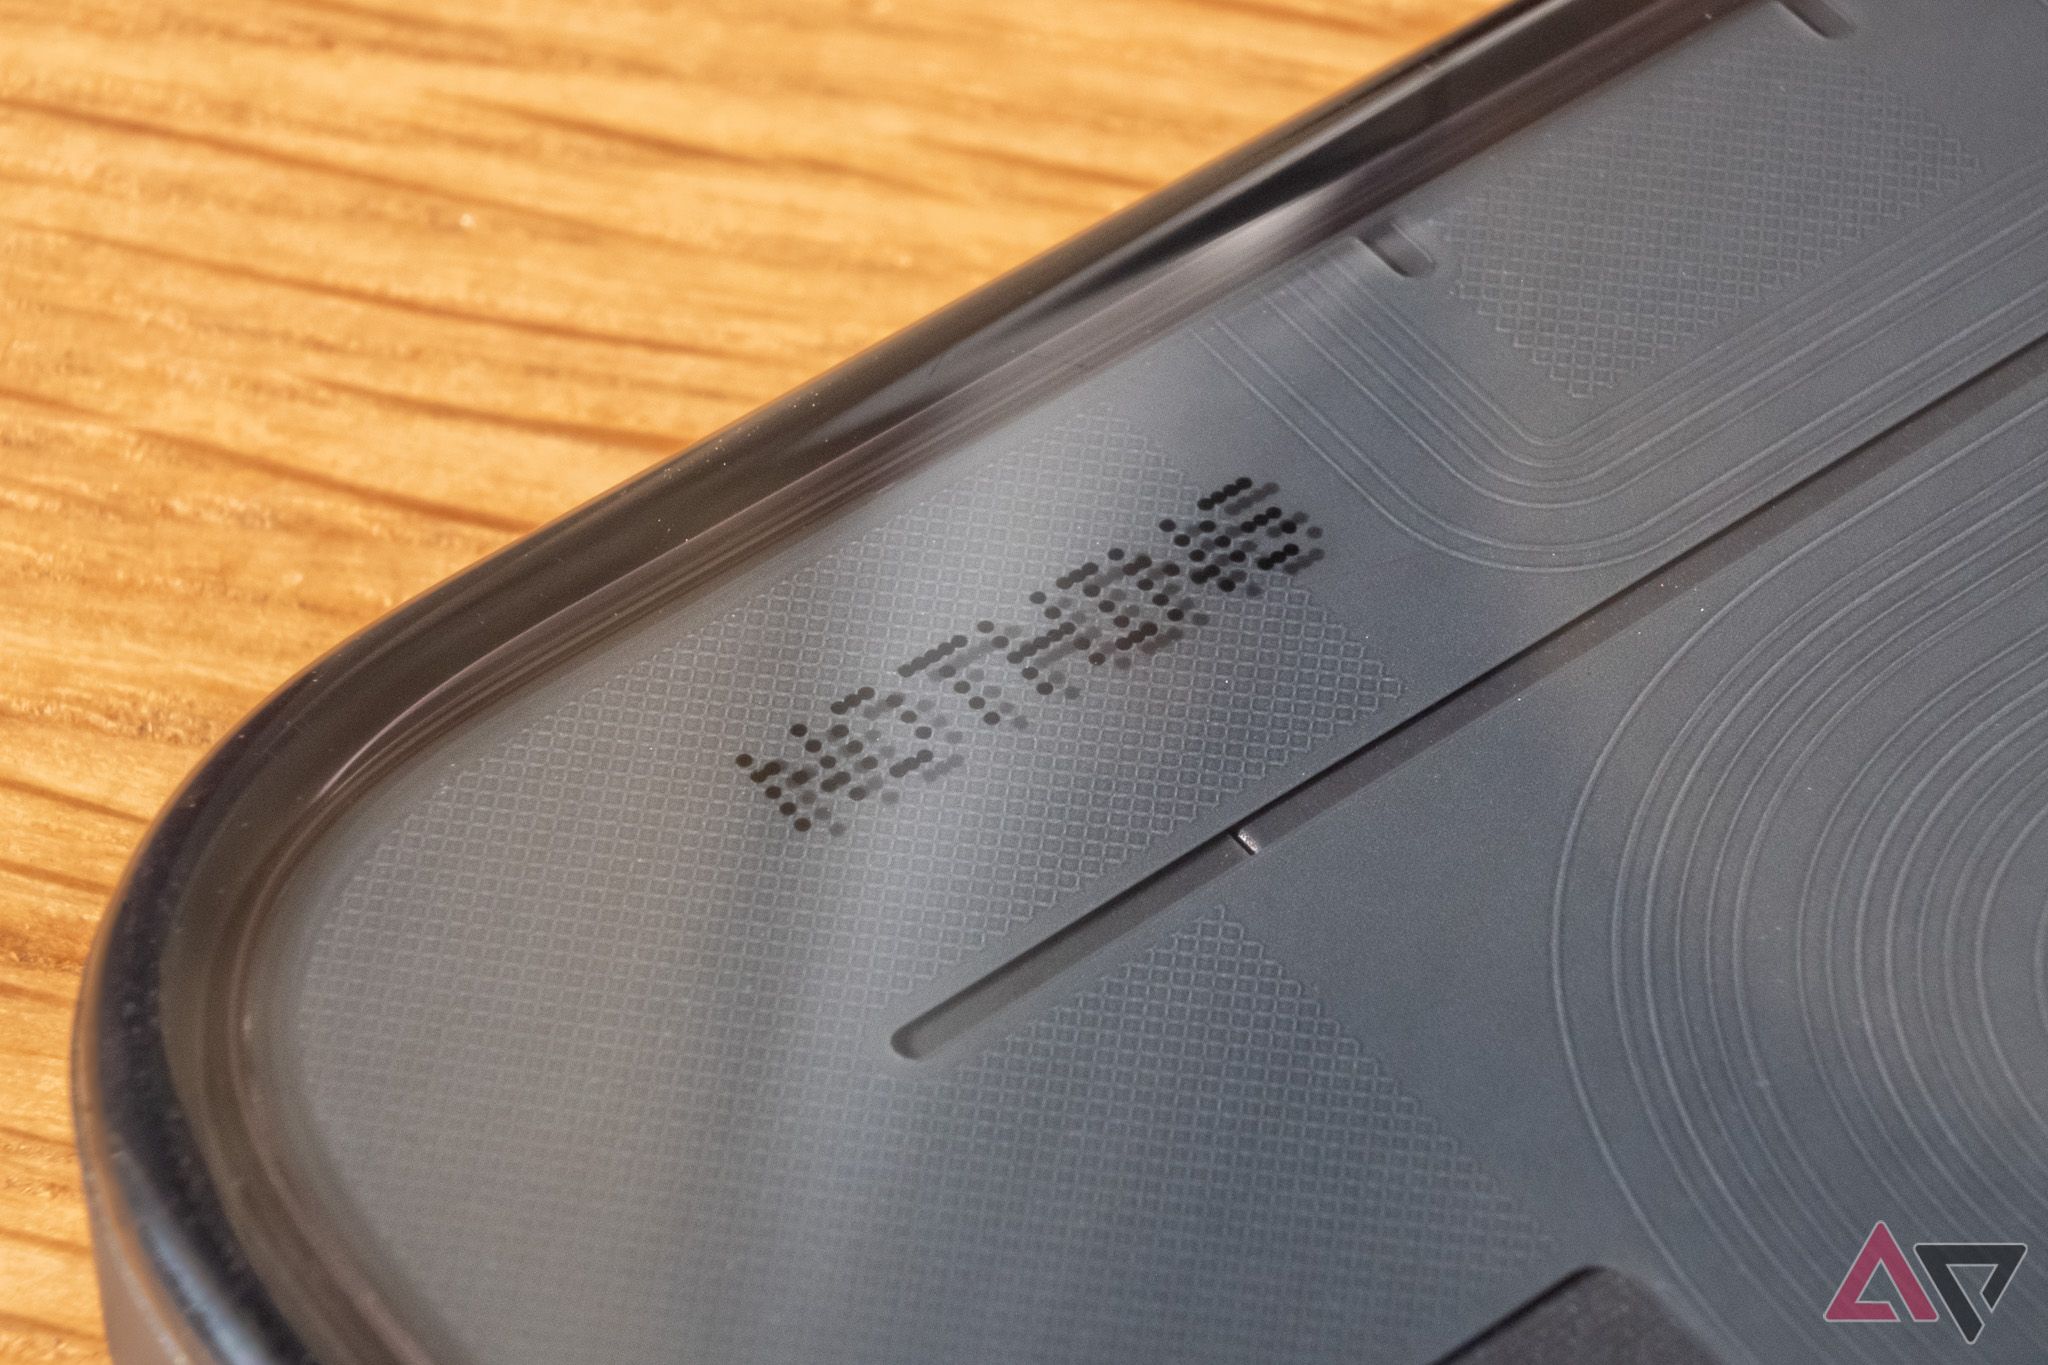 Um close-up da marca Nothing na parte de trás de um telefone